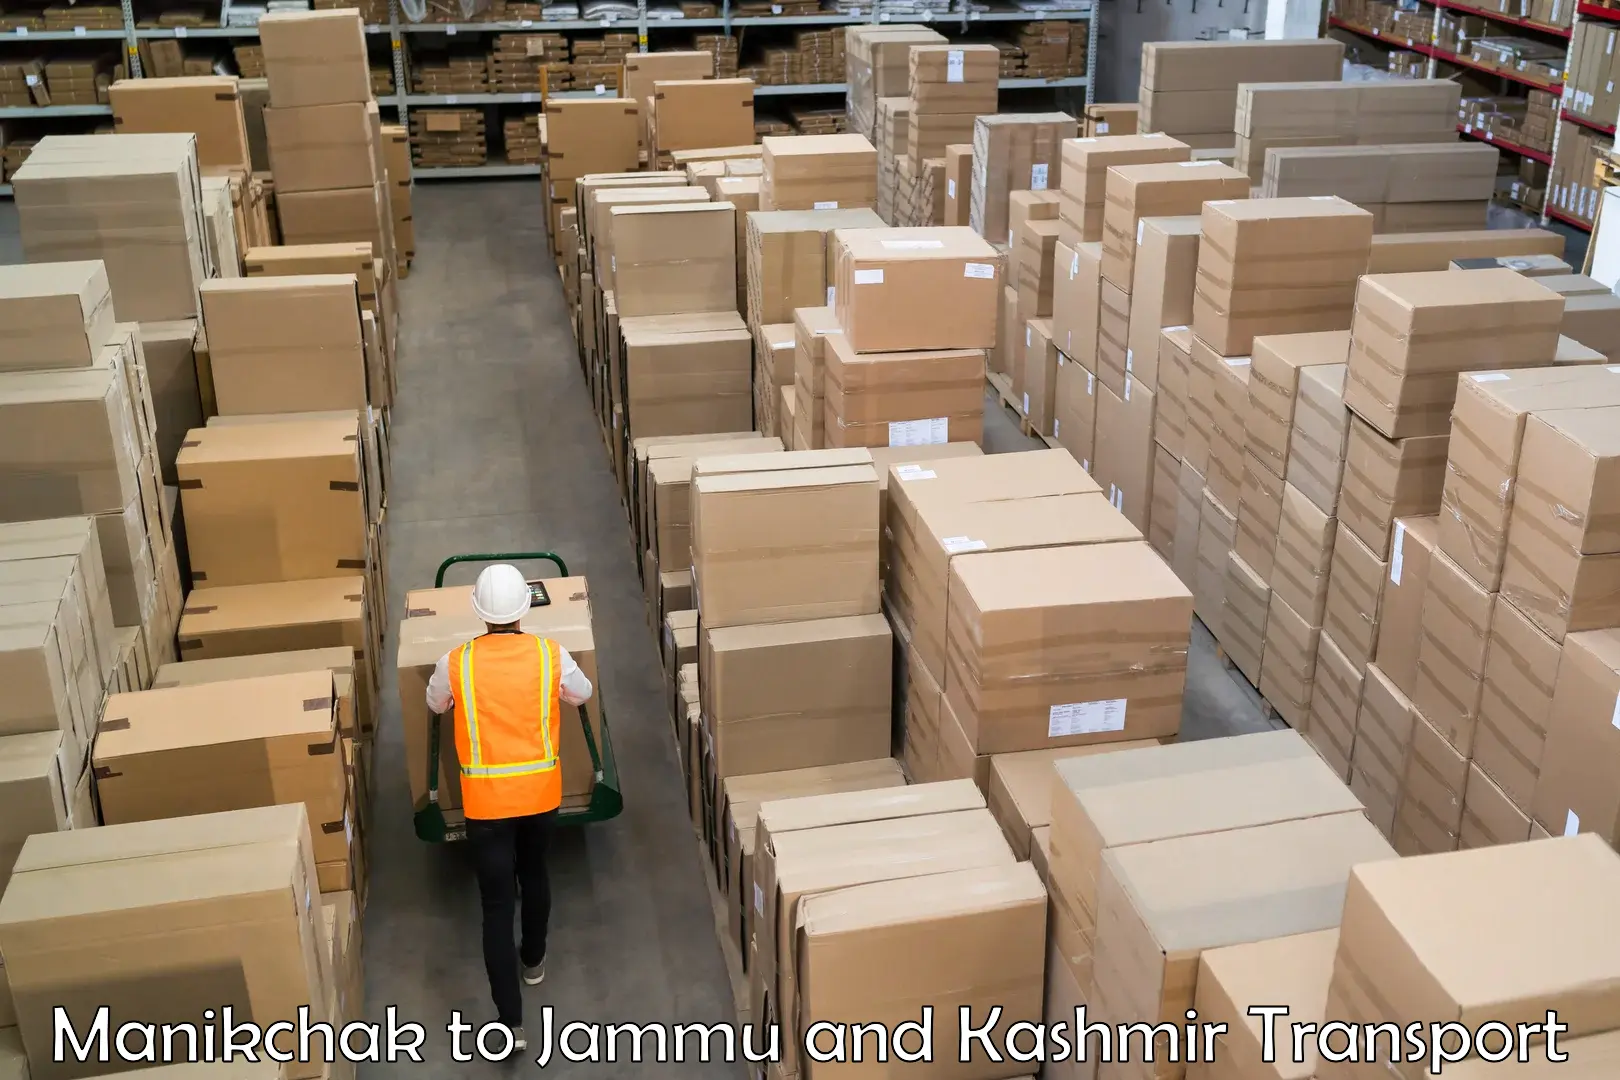 Daily parcel service transport Manikchak to Jammu